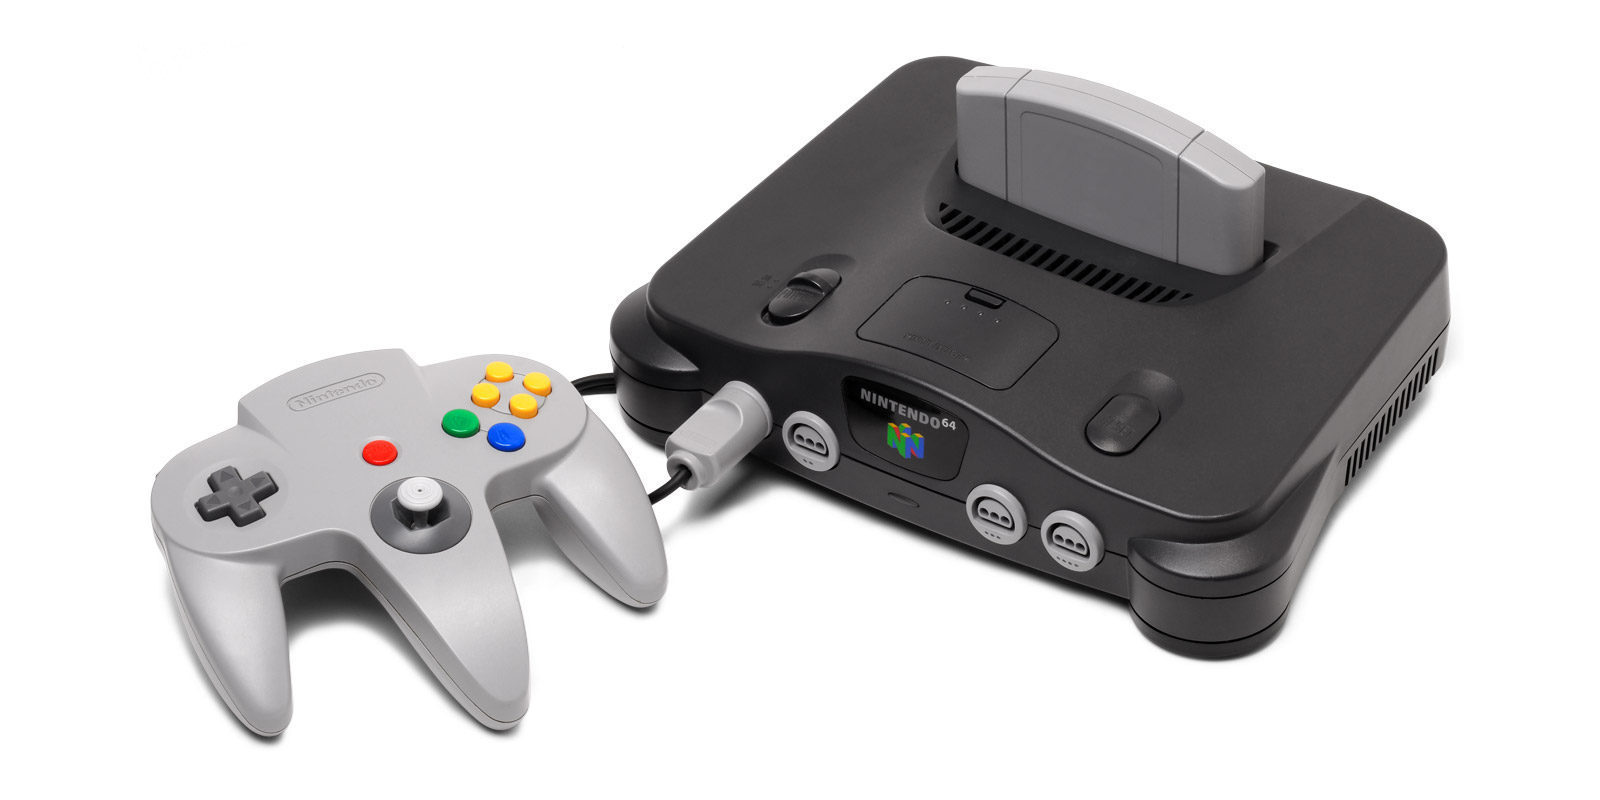 Modifican esta Nintendo 64 para jugar a Switch en ella